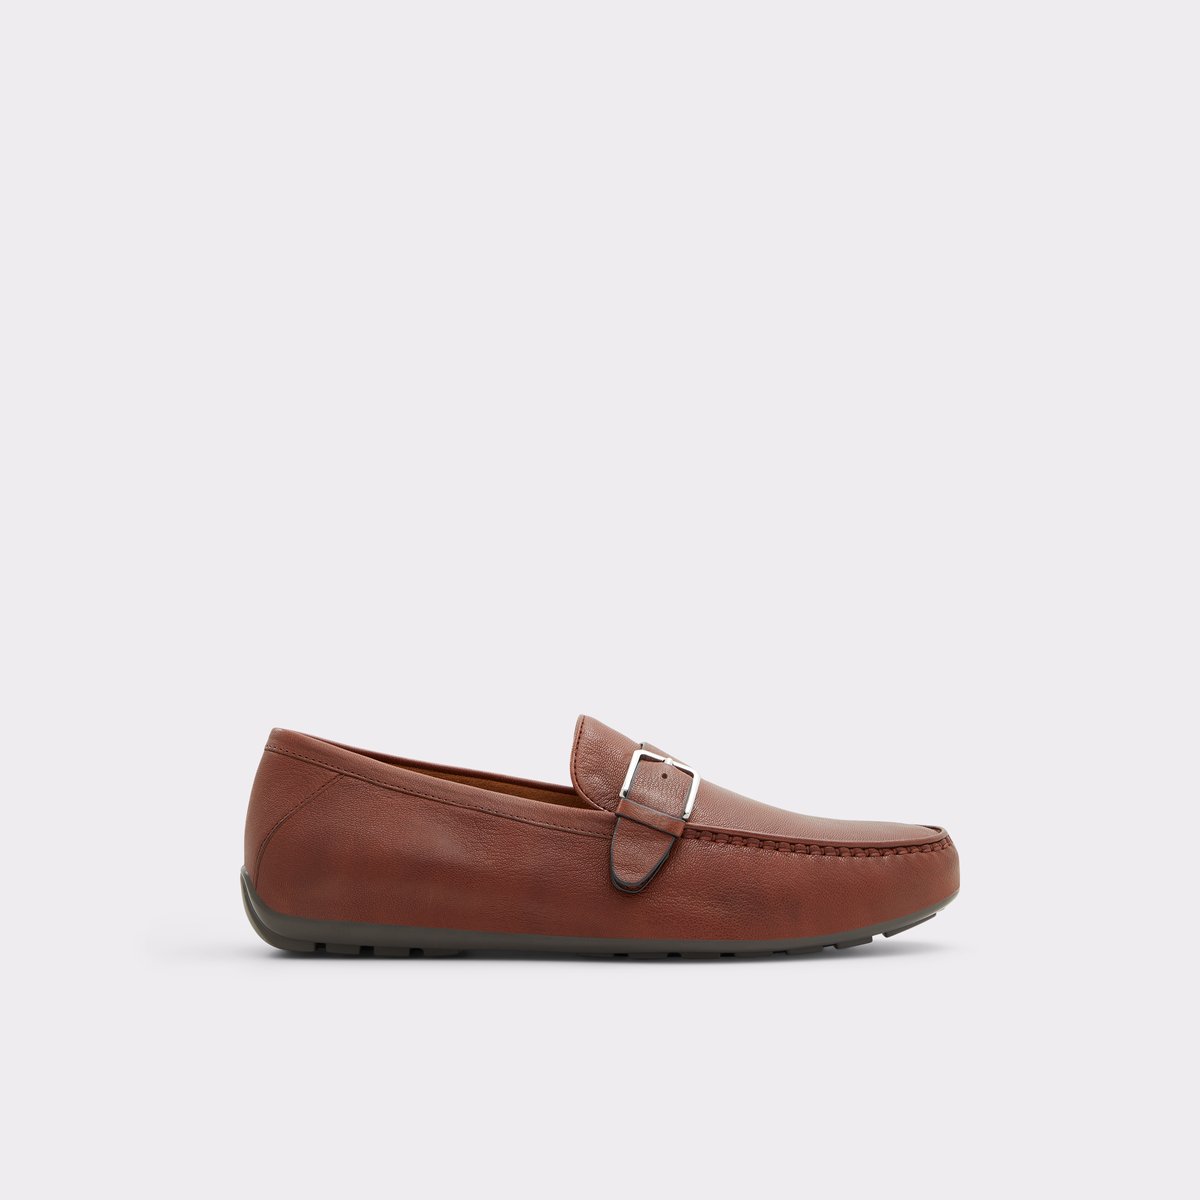 Reggio Cognac Men's Casual Shoes | ALDO Canada